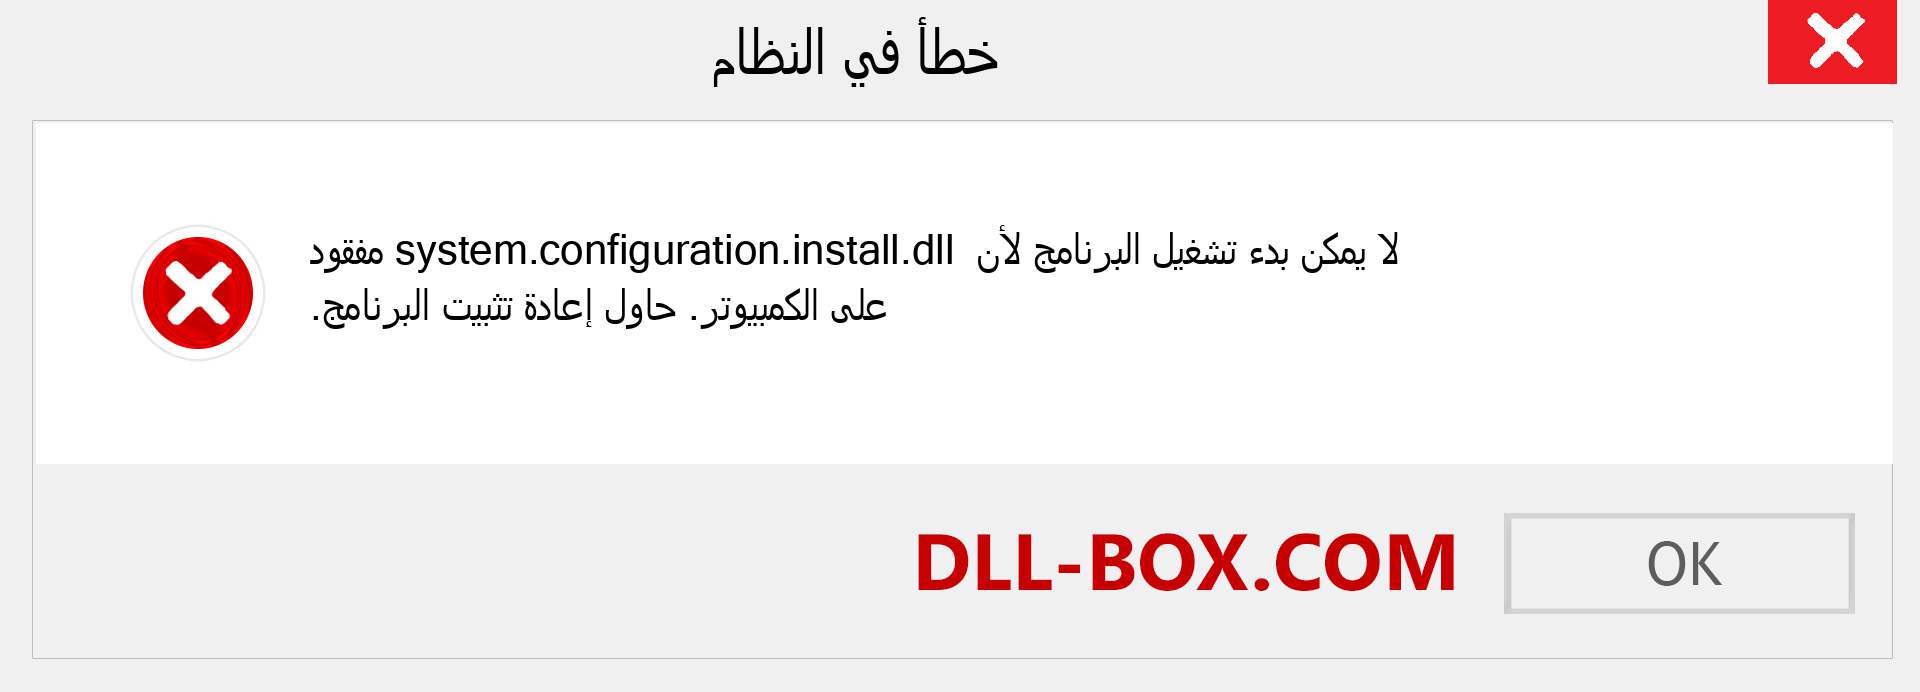 ملف system.configuration.install.dll مفقود ؟. التنزيل لنظام التشغيل Windows 7 و 8 و 10 - إصلاح خطأ system.configuration.install dll المفقود على Windows والصور والصور